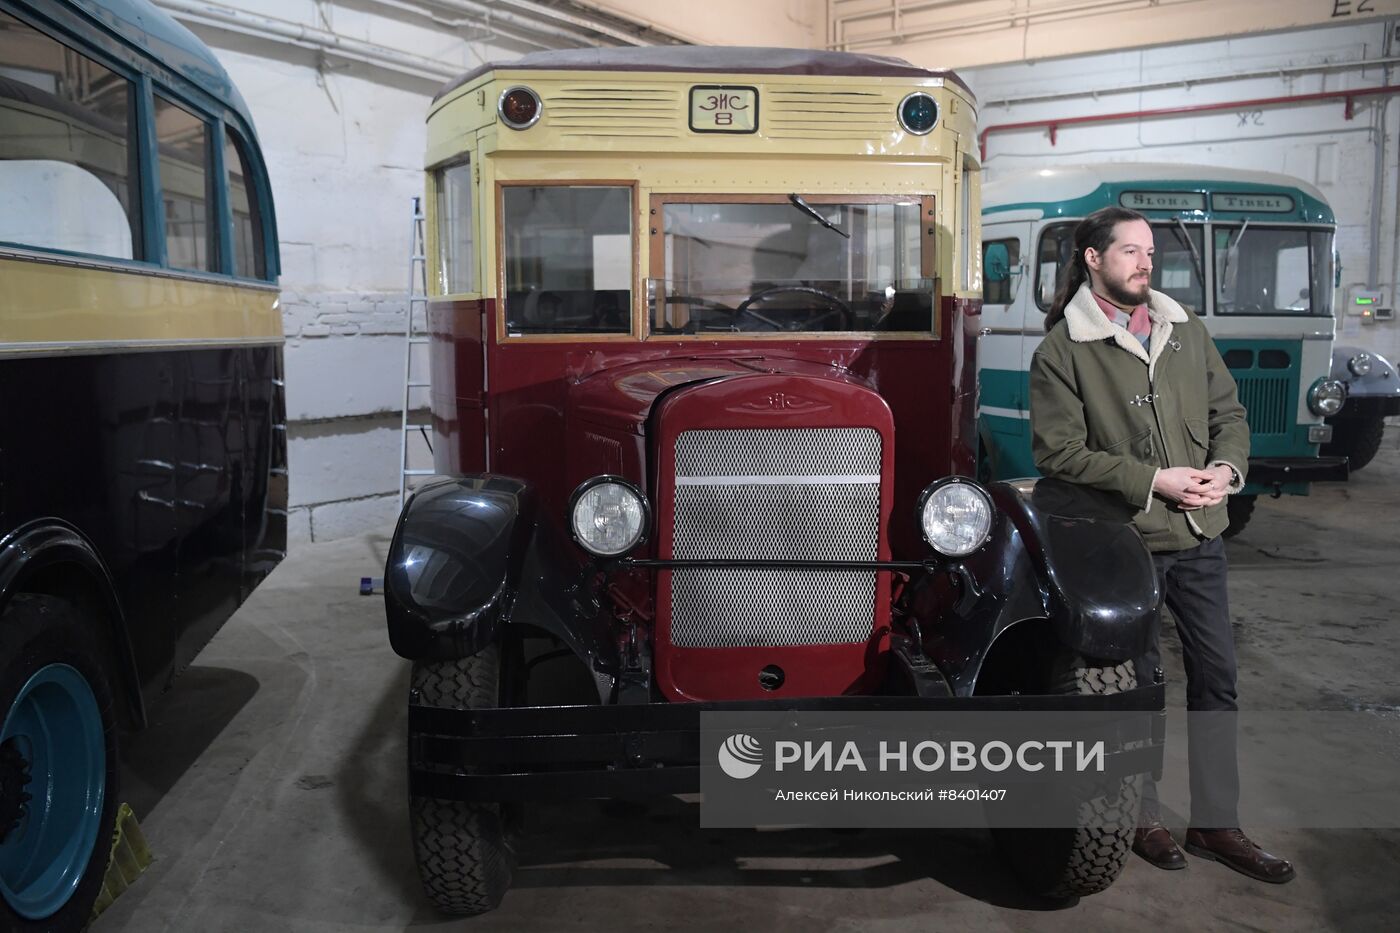 Коллекция Музея Транспорта Москвы